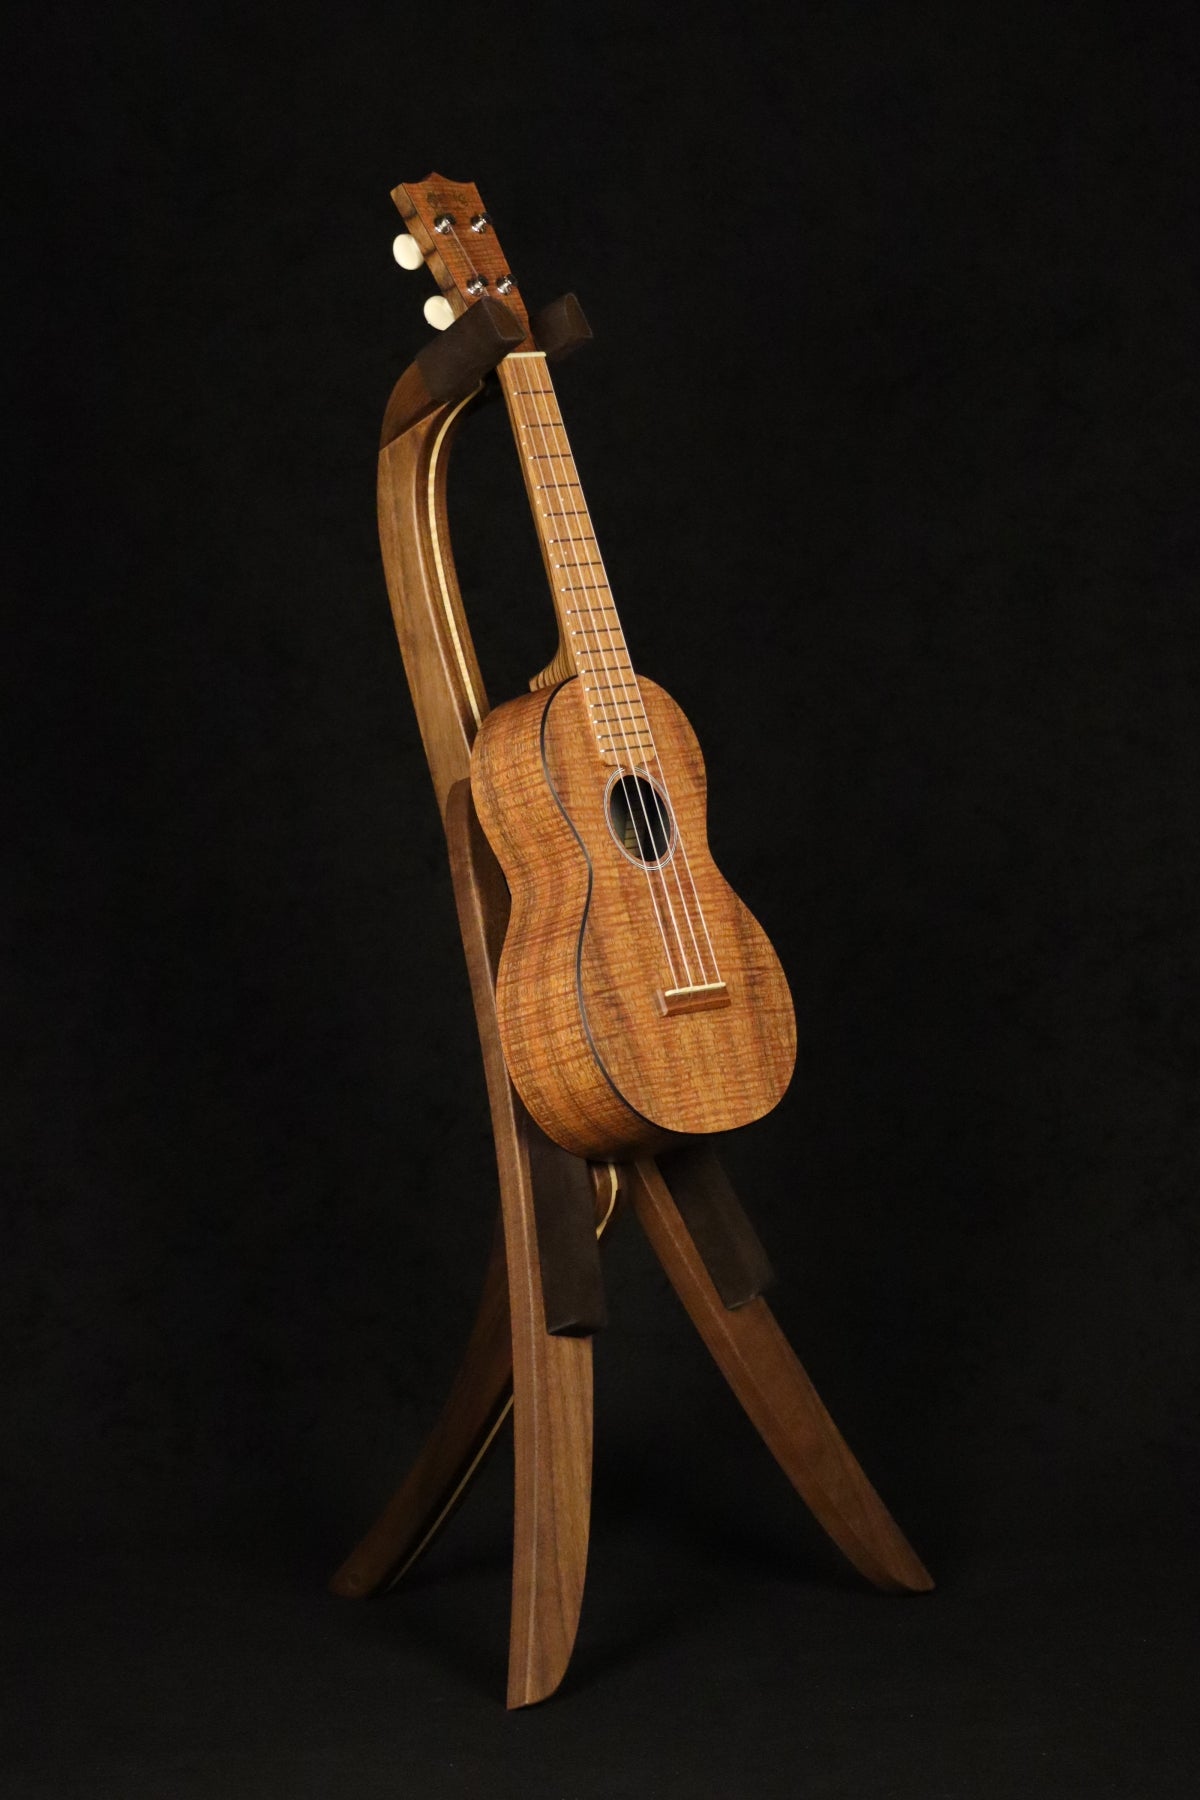 Folding walnut and curly maple wood ukulele floor stand full front image with Martin ukulele